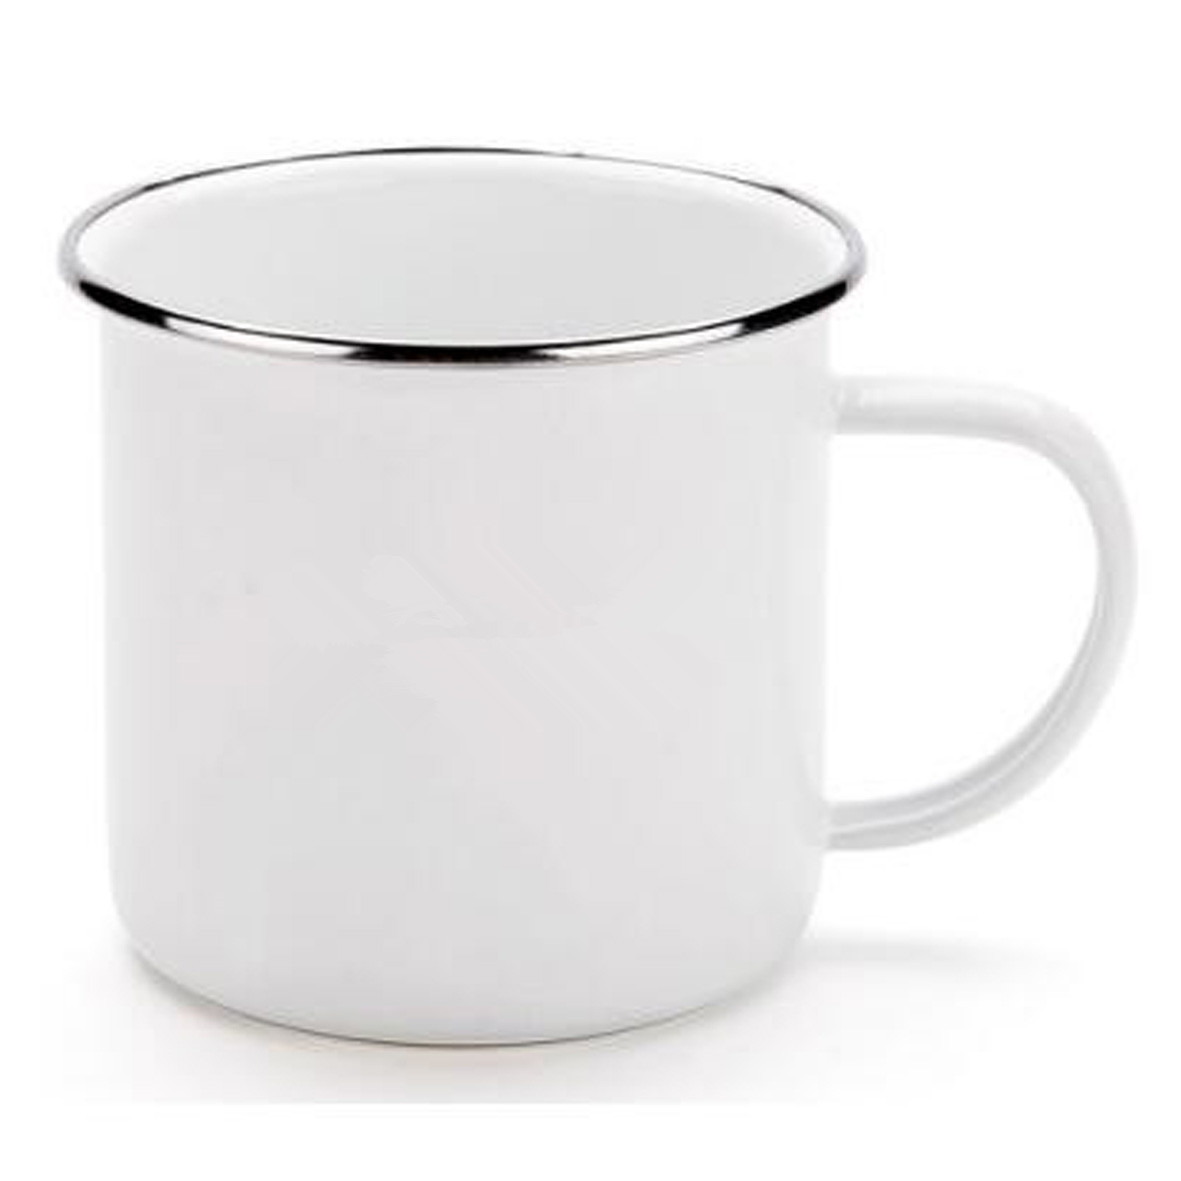 GL-ELY1067 Hot Selling White Enamel Mug